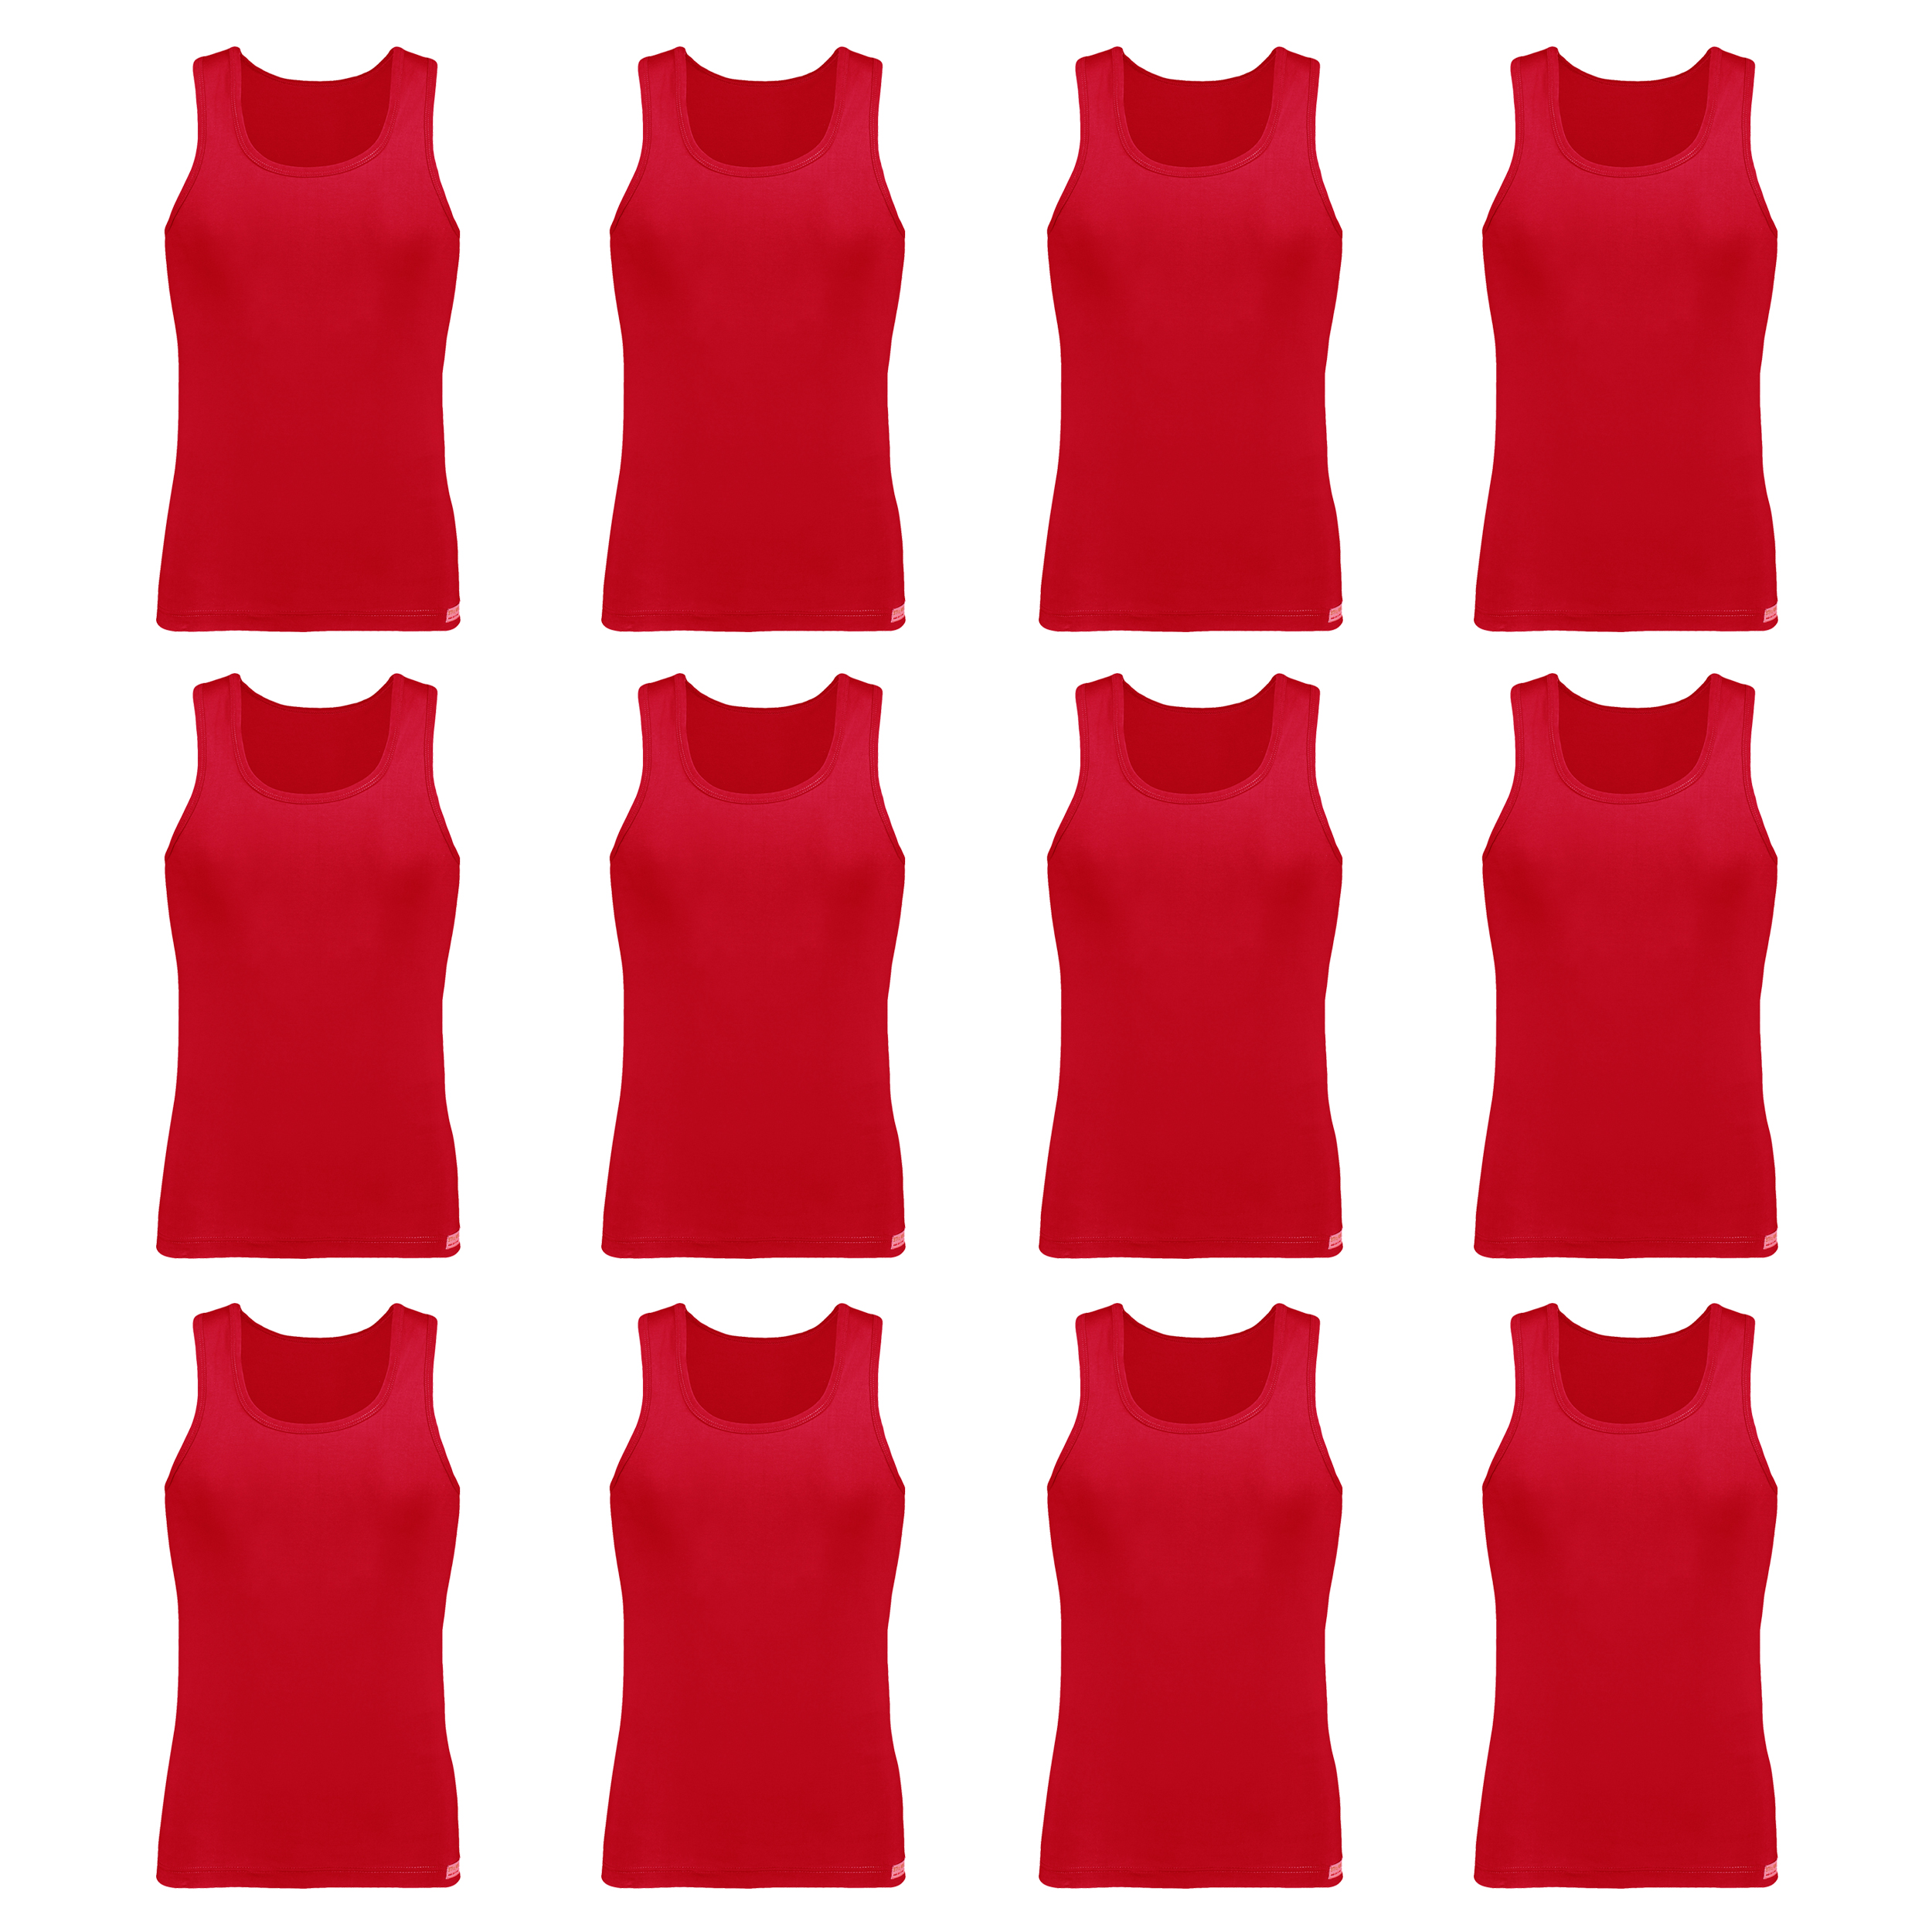 زیرپوش رکابی مردانه برهان تن پوش مدل 2-01  رنگ قرمز بسته 12 عددی